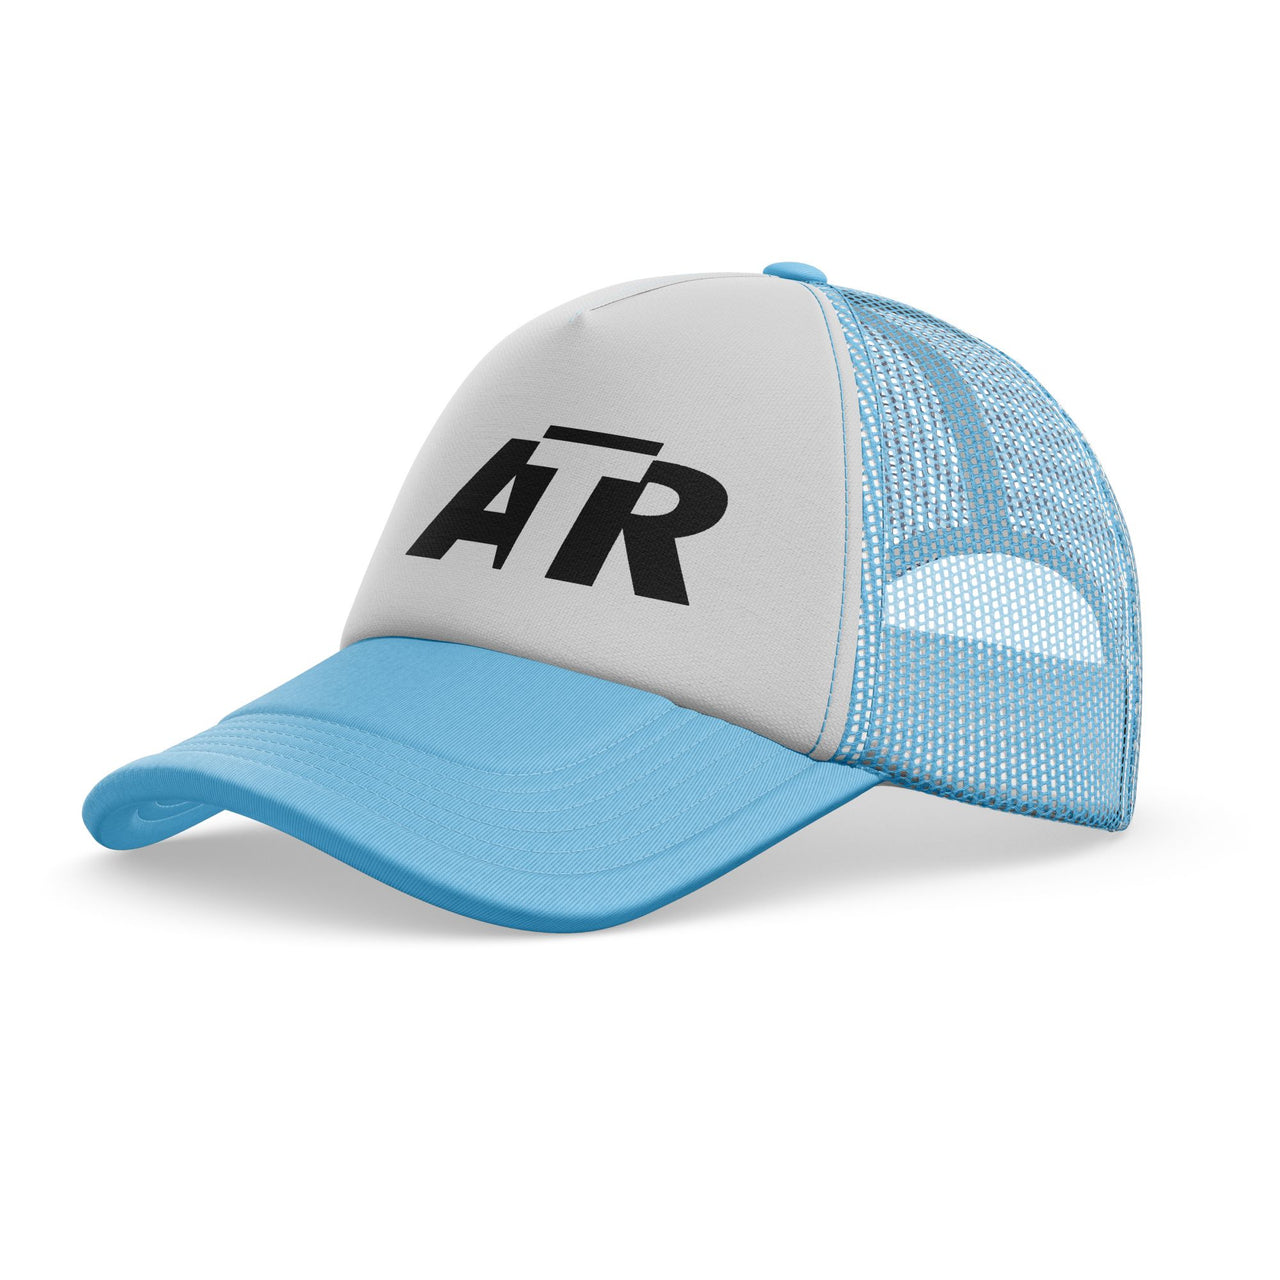 ATR & Text Designed Trucker Caps & Hats